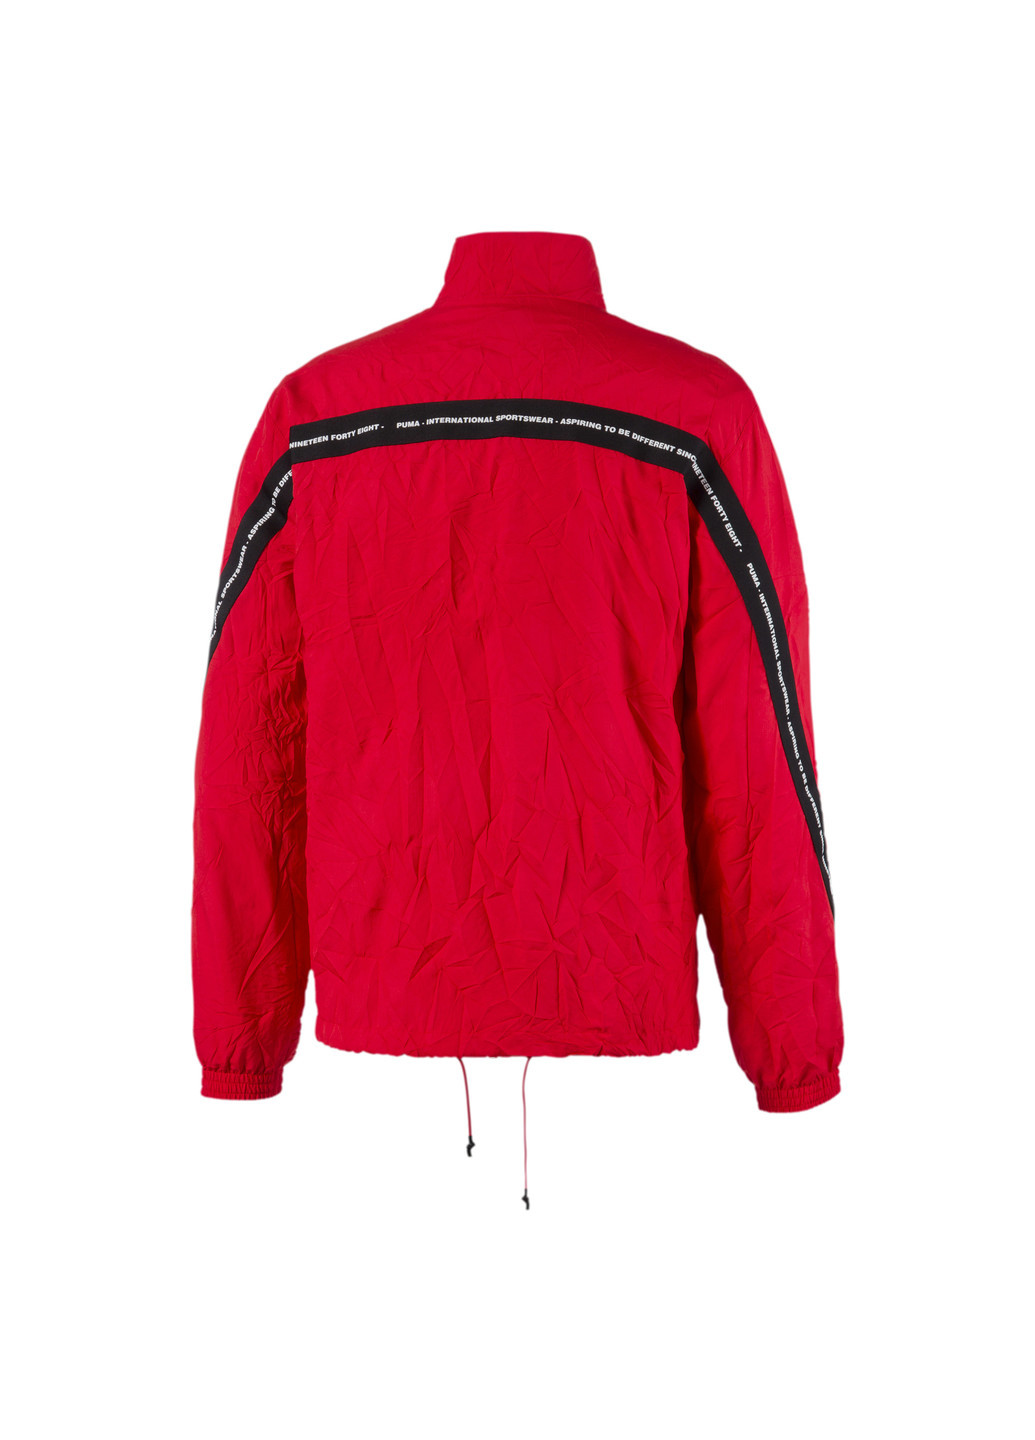 Красная демисезонная куртка Puma Avenir Woven Track Top